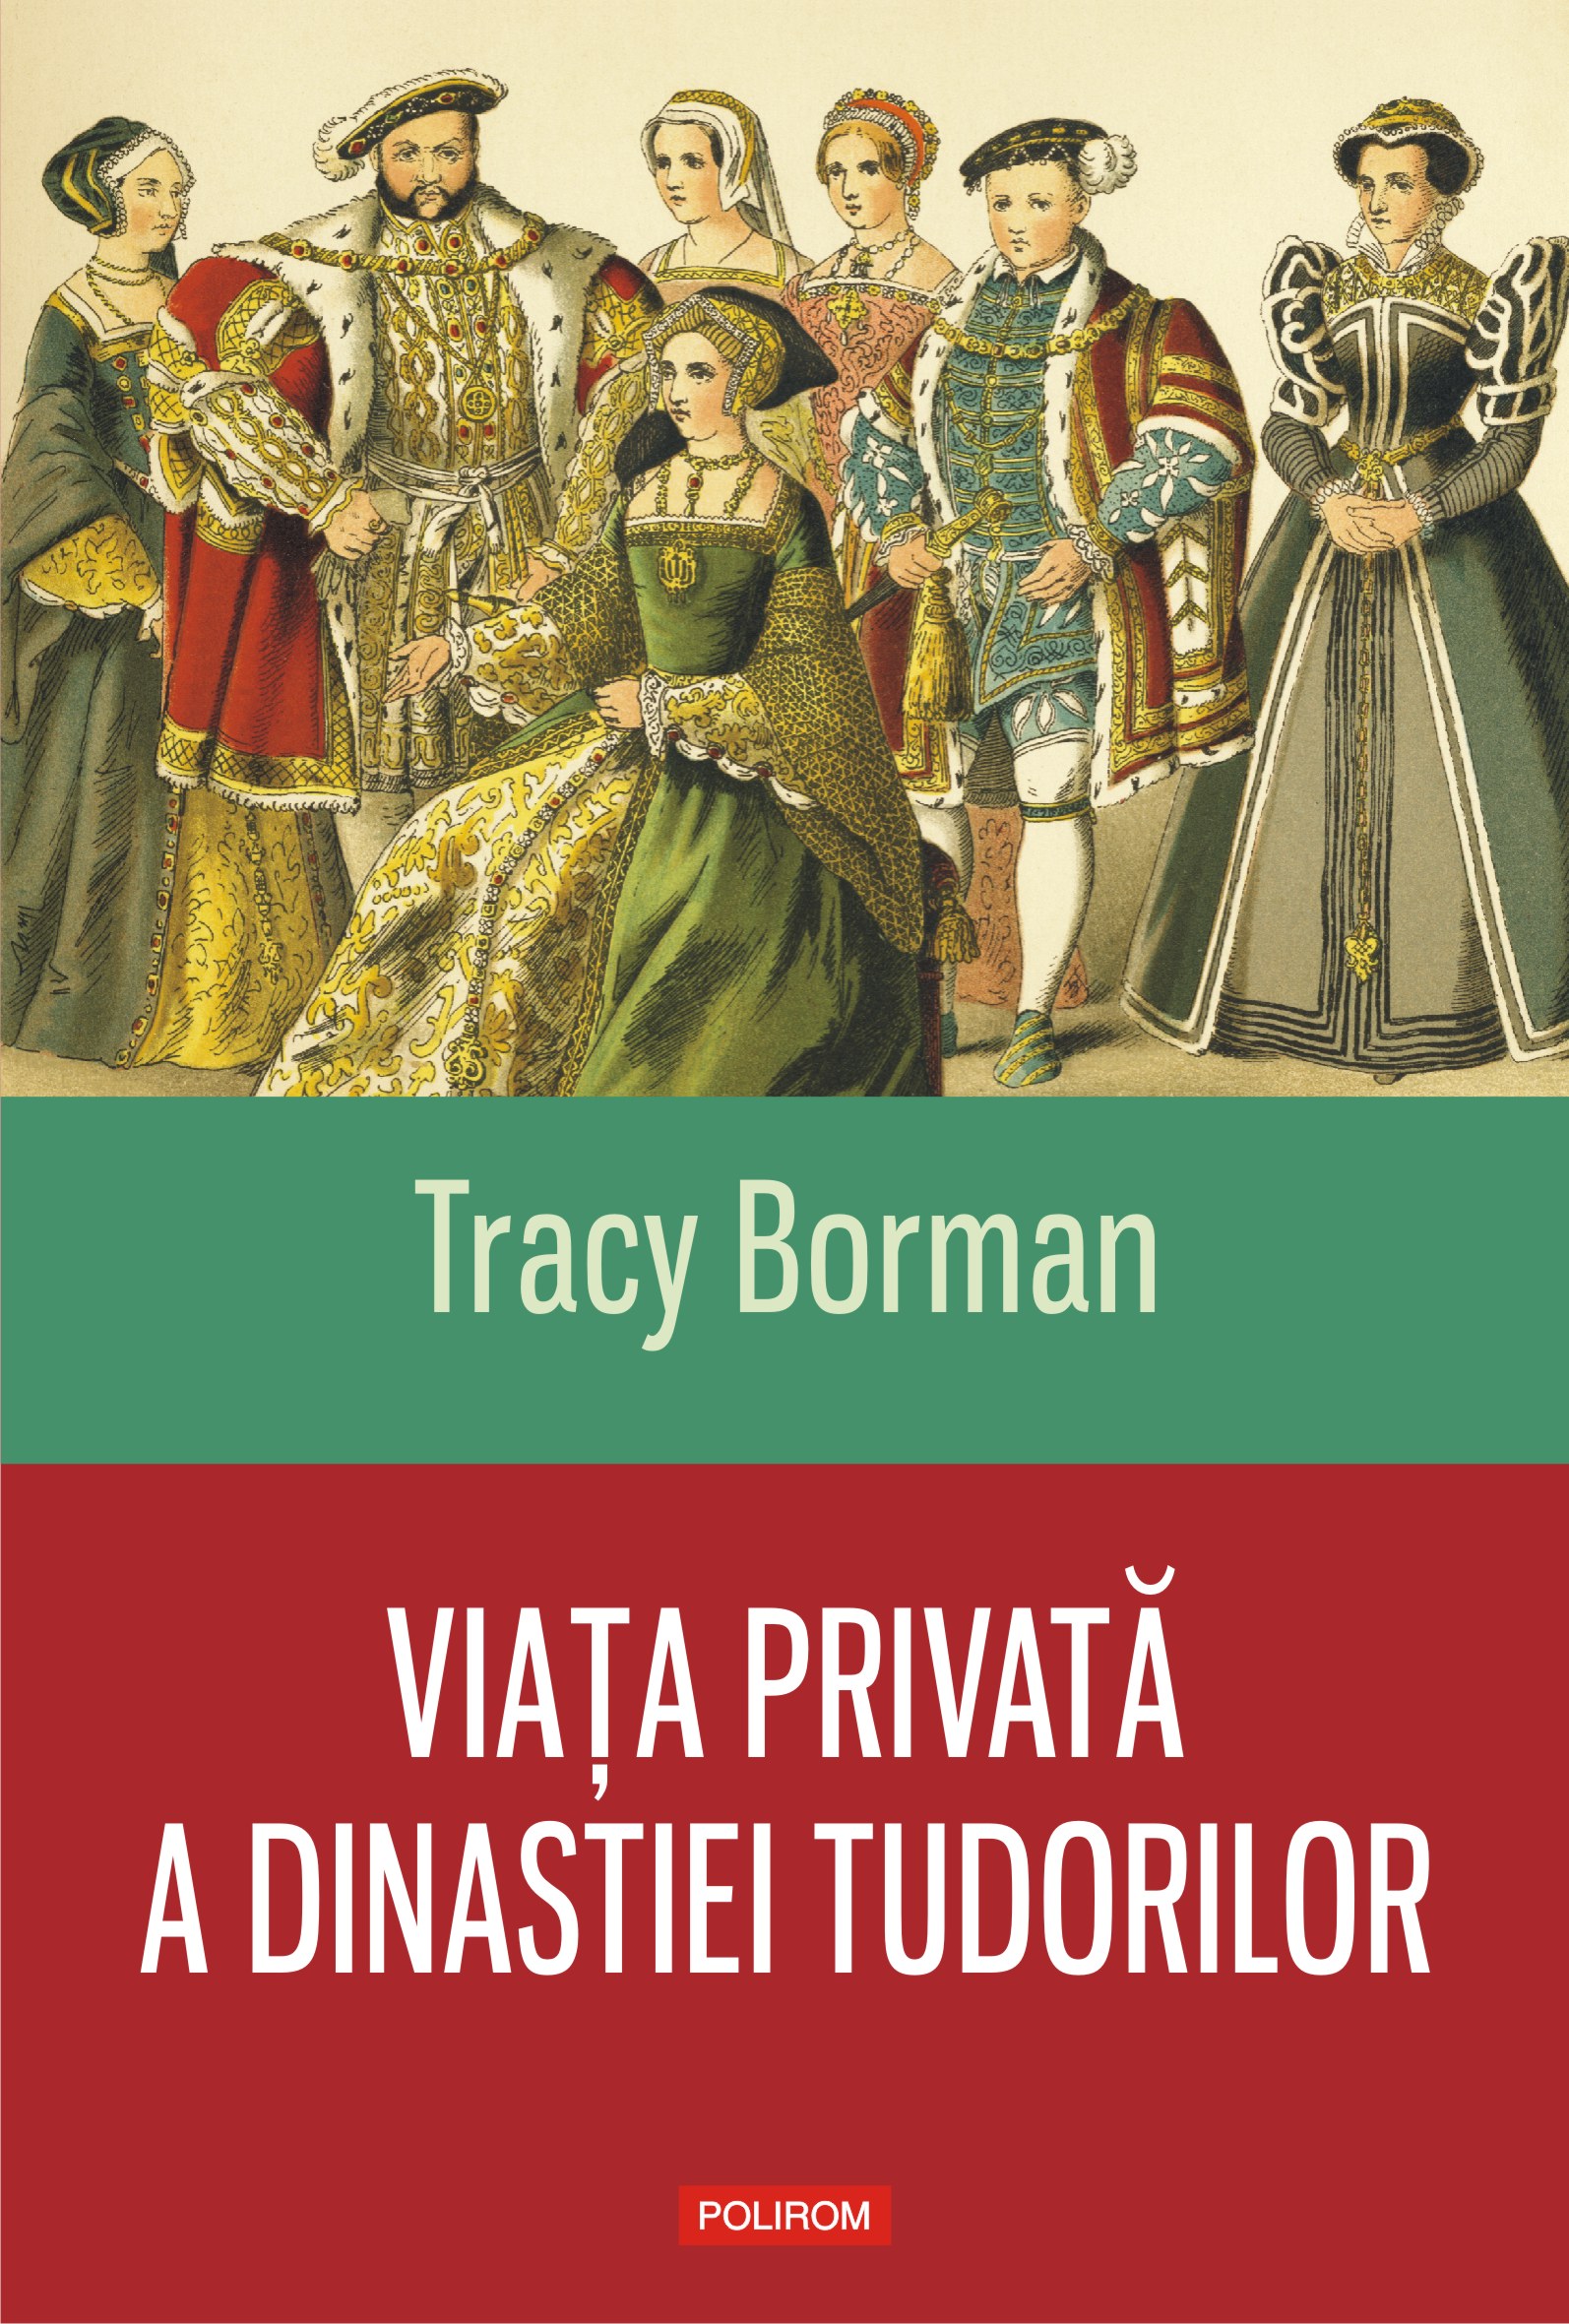 eBook Viata privata a dinastiei Tudorilor - Tracy Borman